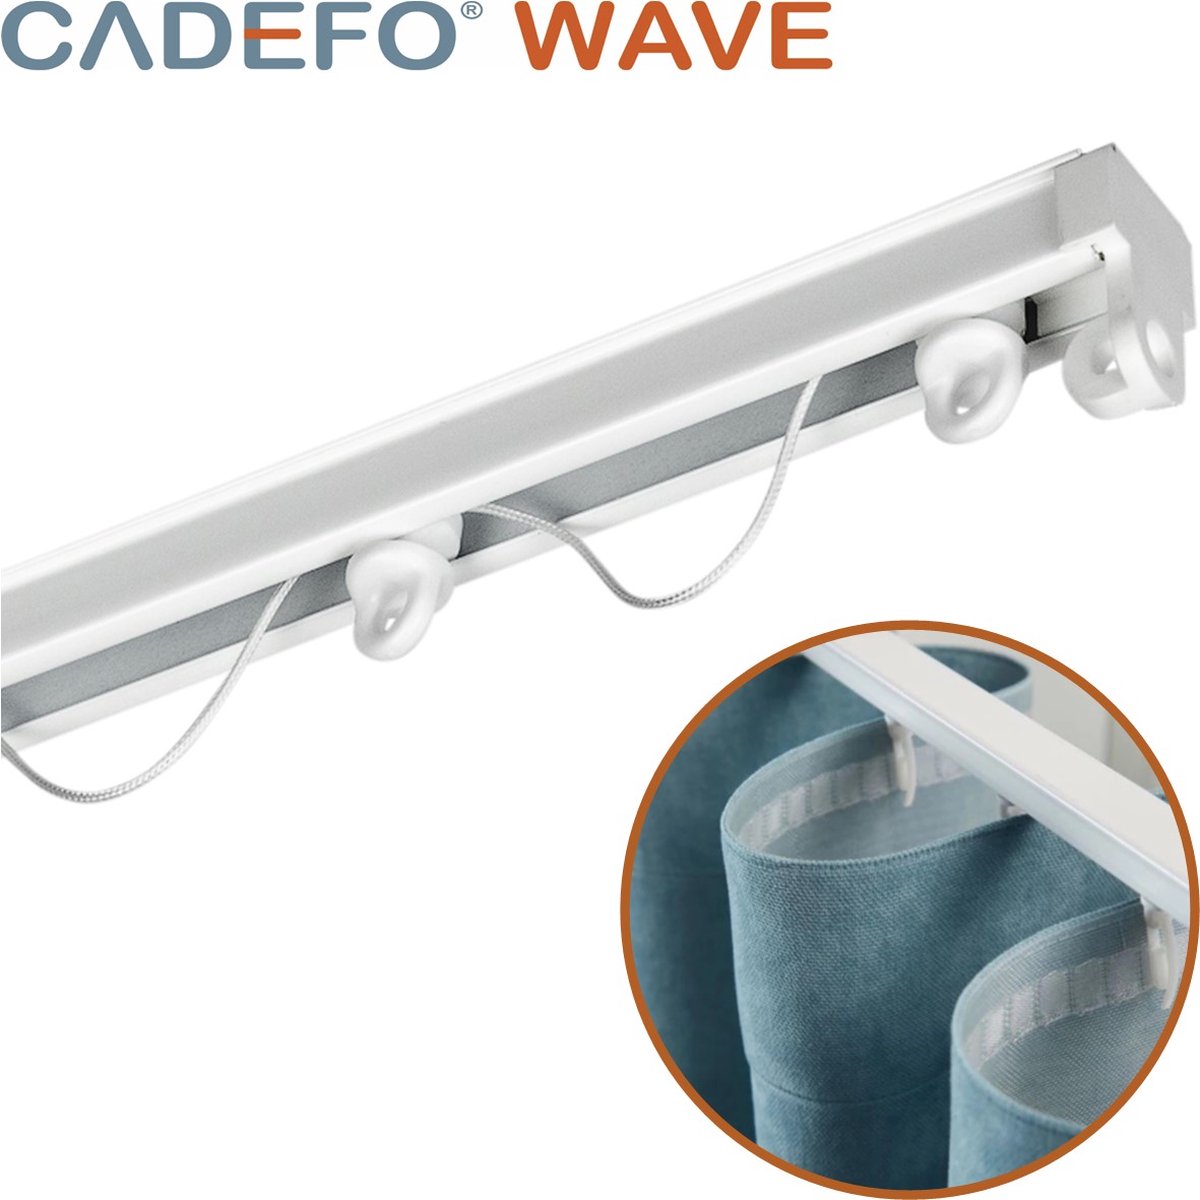 CADEFO WAVE (301 - 350 cm) Gordijnrails - Compleet op maat! - UIT 1 STUK - Leverbaar tot 6 meter - Plafondbevestiging - Lengte 315 cm